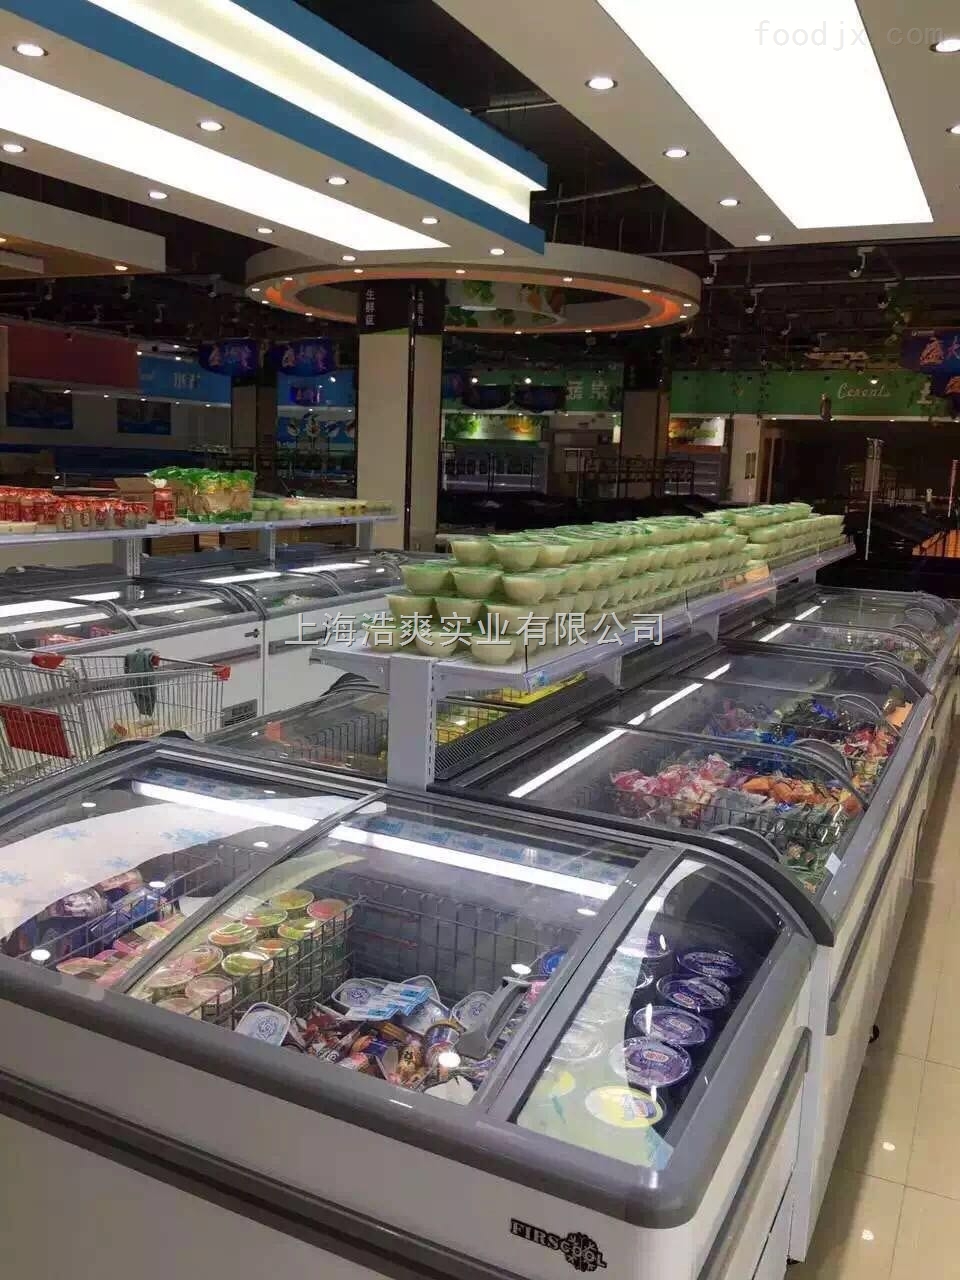 出售组合式冷冻展示柜 ，超市大型商用岛柜优惠出售